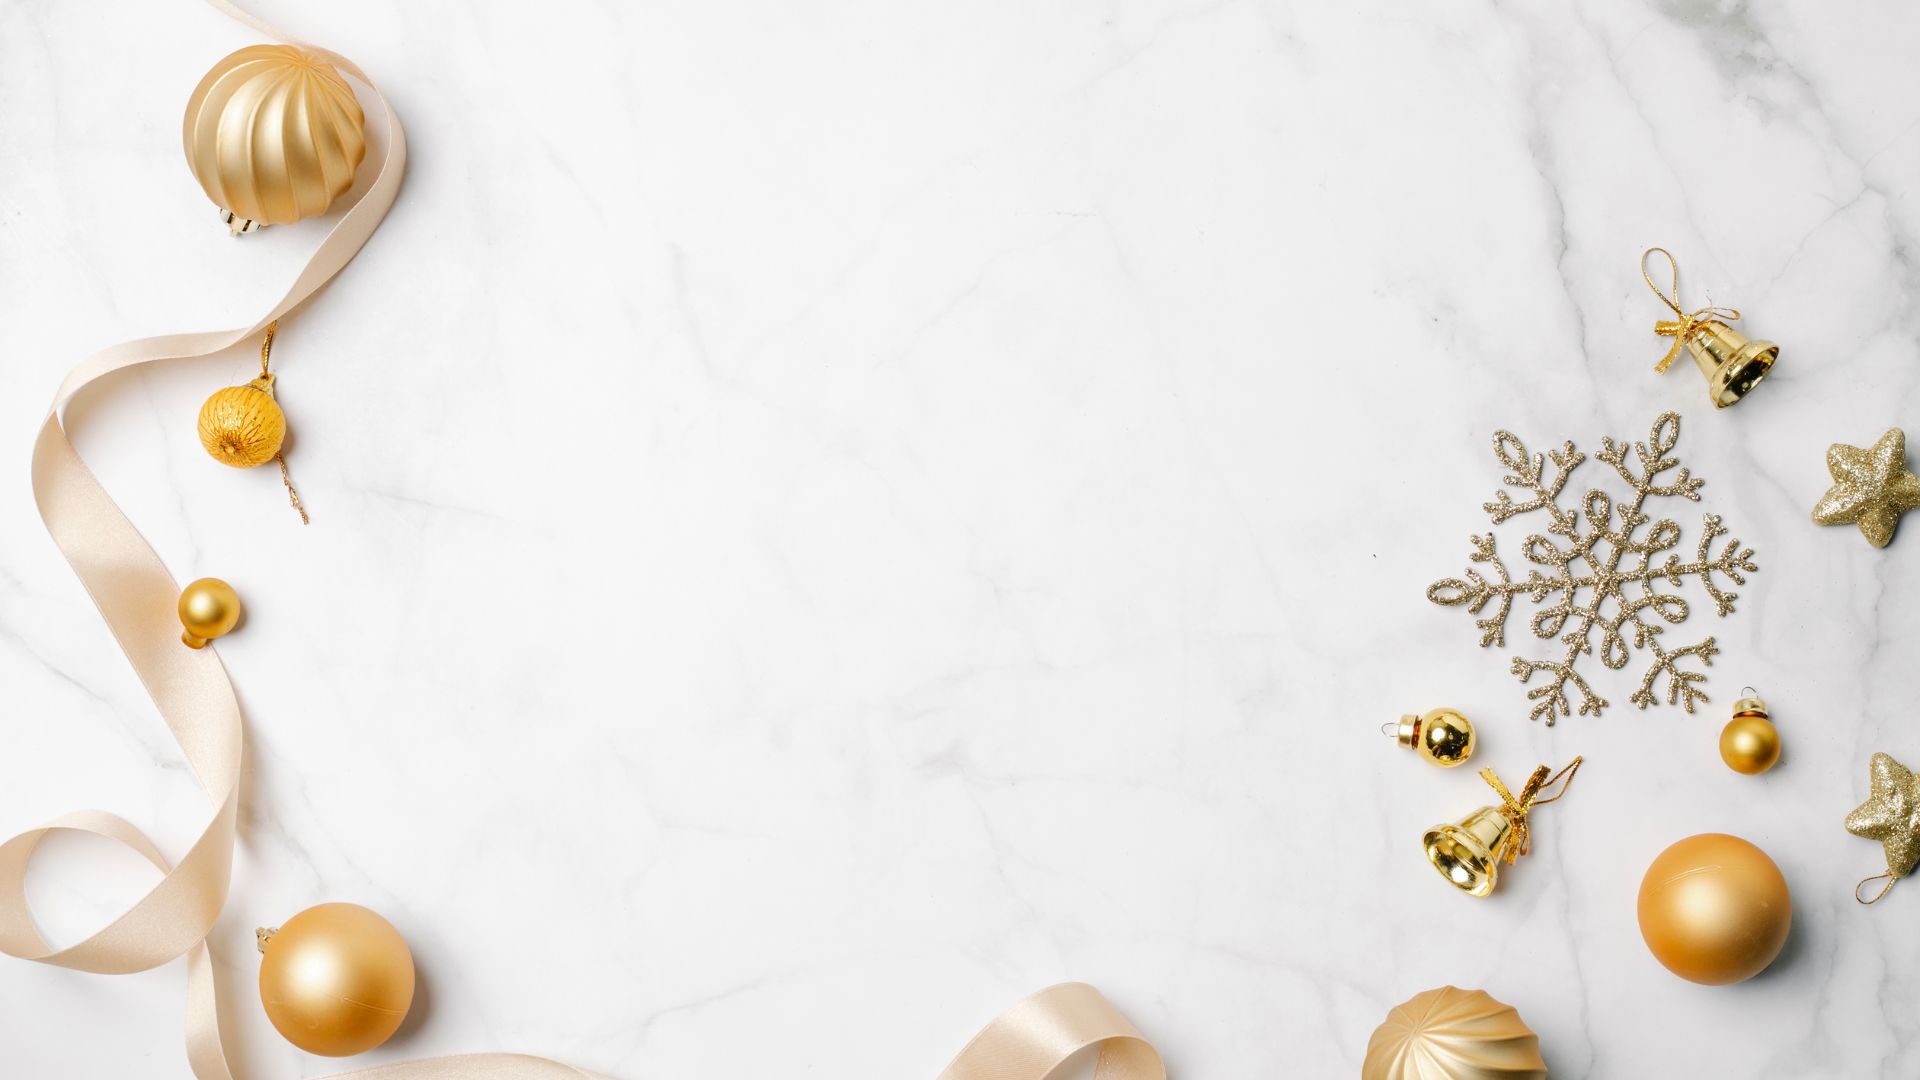 Imagem de fundo branco, com vários tipos de enfeites natalinos como bolas, fitas e sinos, na cor dourada.